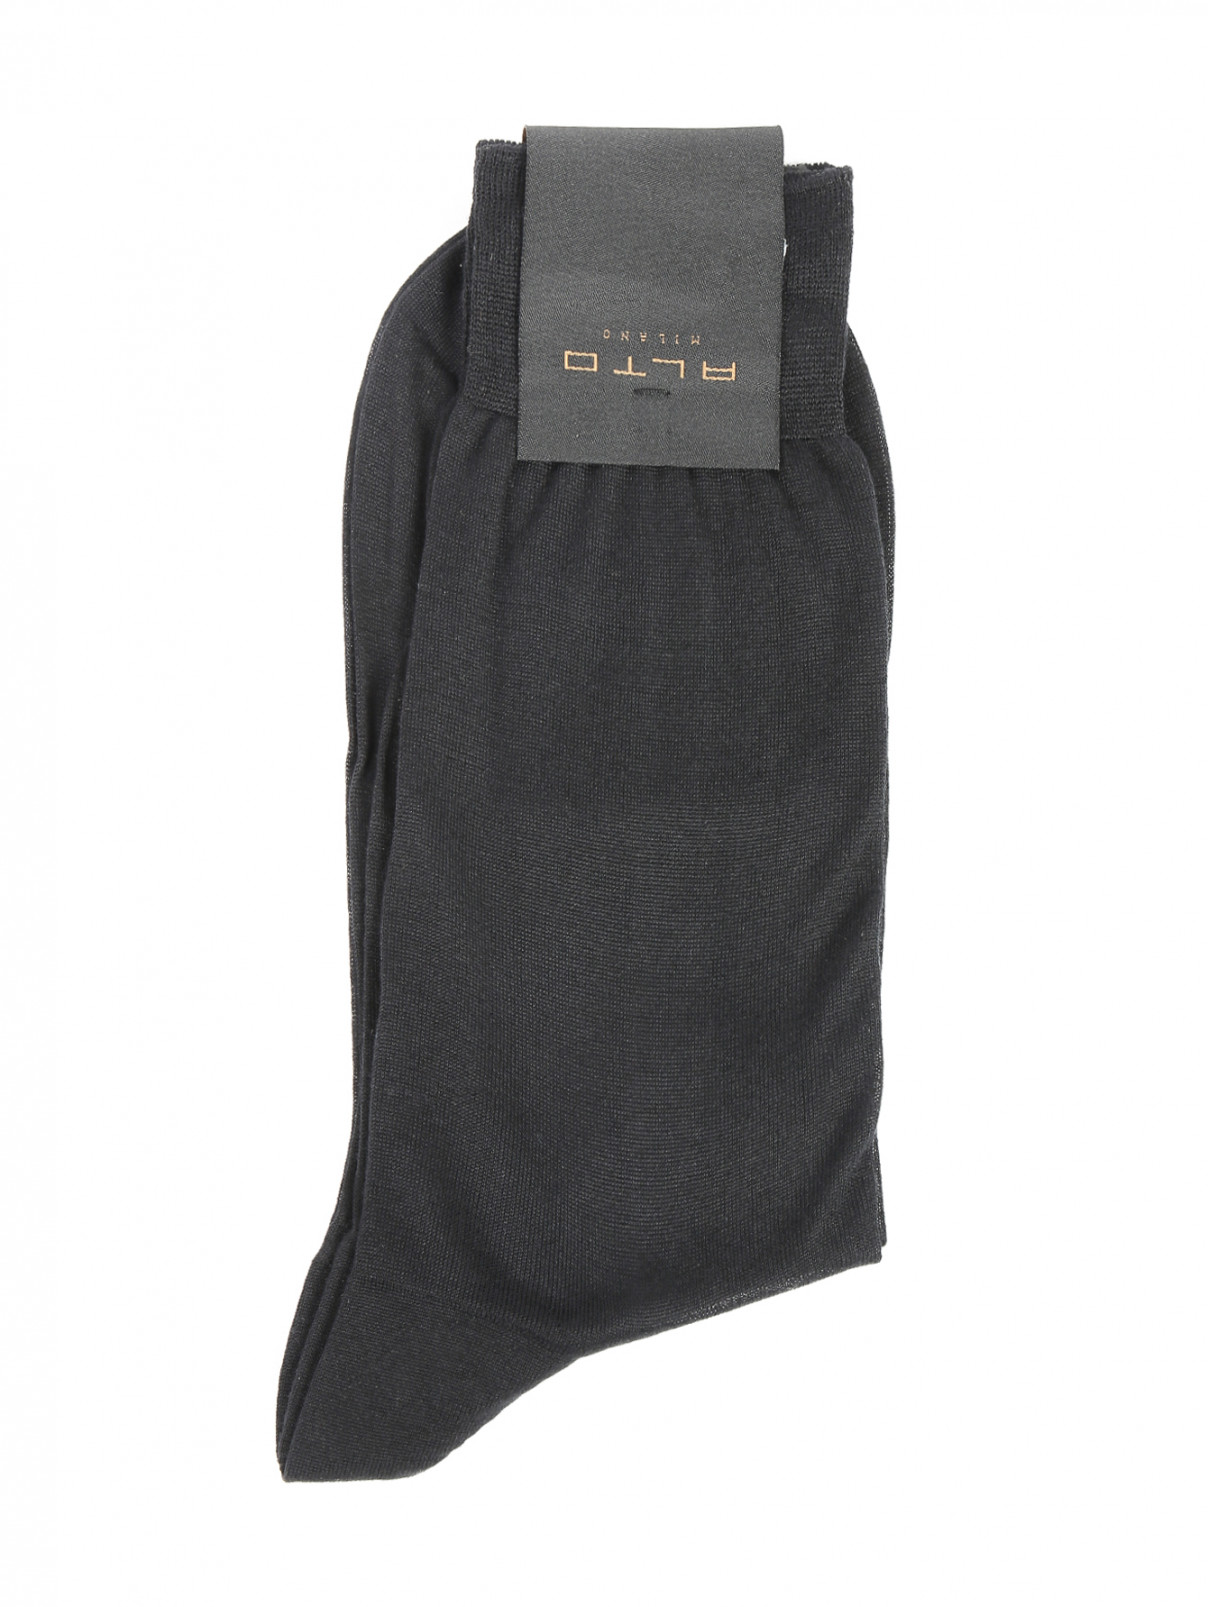 Носки из шелка Peekaboo  –  Общий вид  – Цвет:  Черный